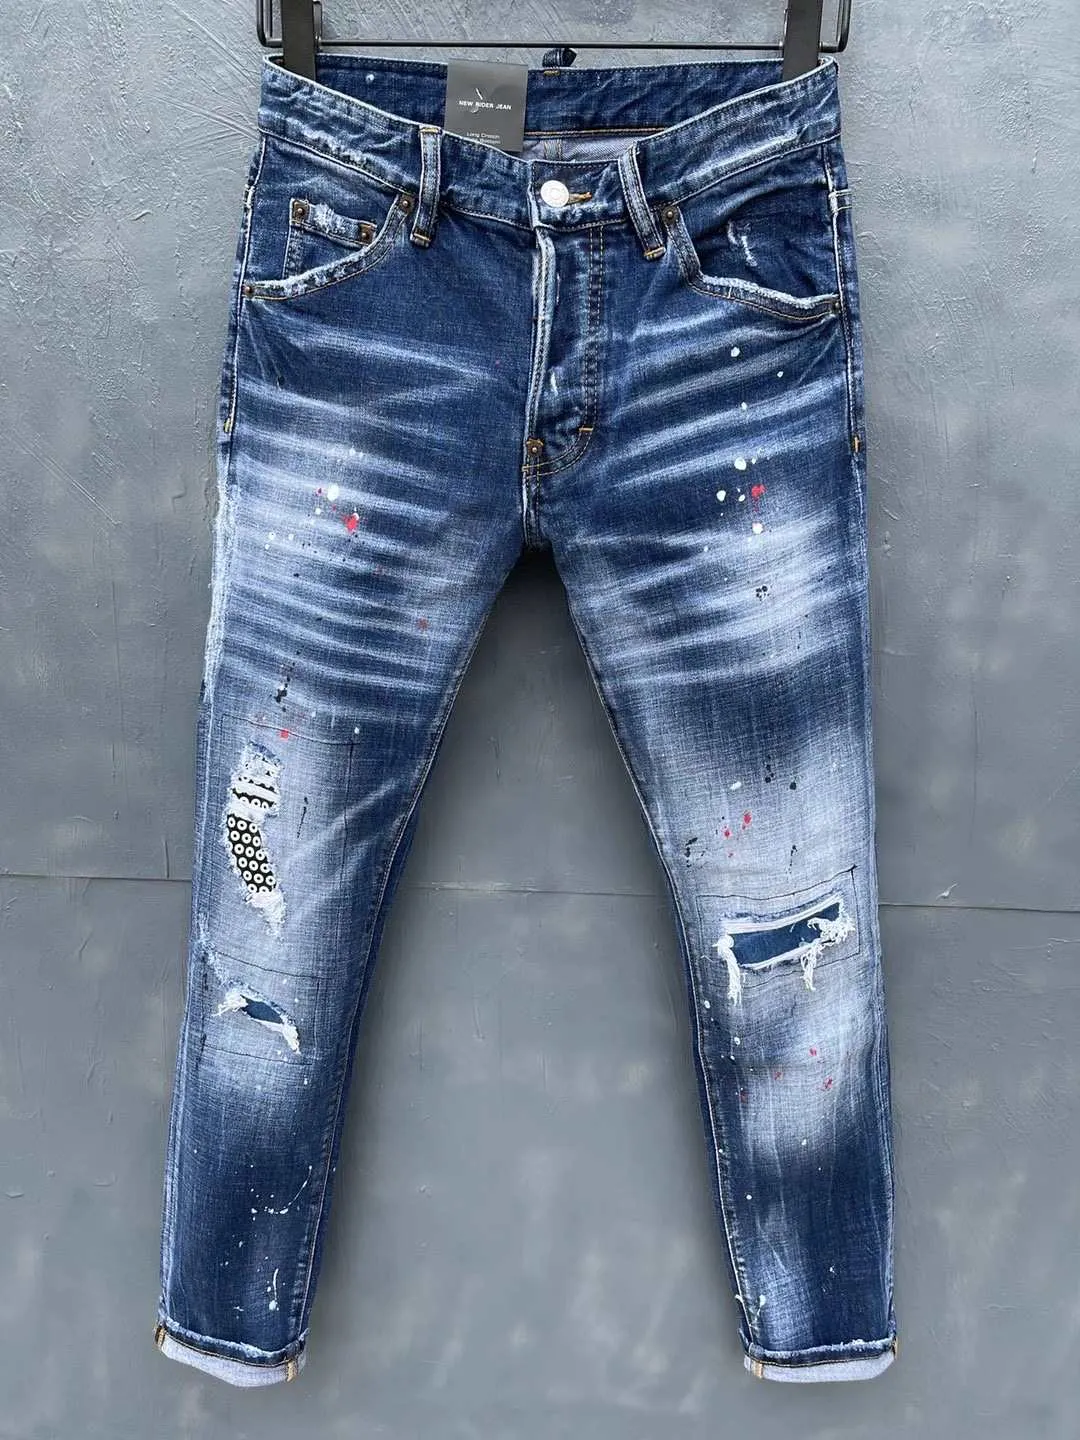 2021 neue Marke, europäische und amerikanische Mode für Herren, lässige Jeans, hochwertiges Waschen, reines Handschleifen, Qualitätsoptimierung lt039